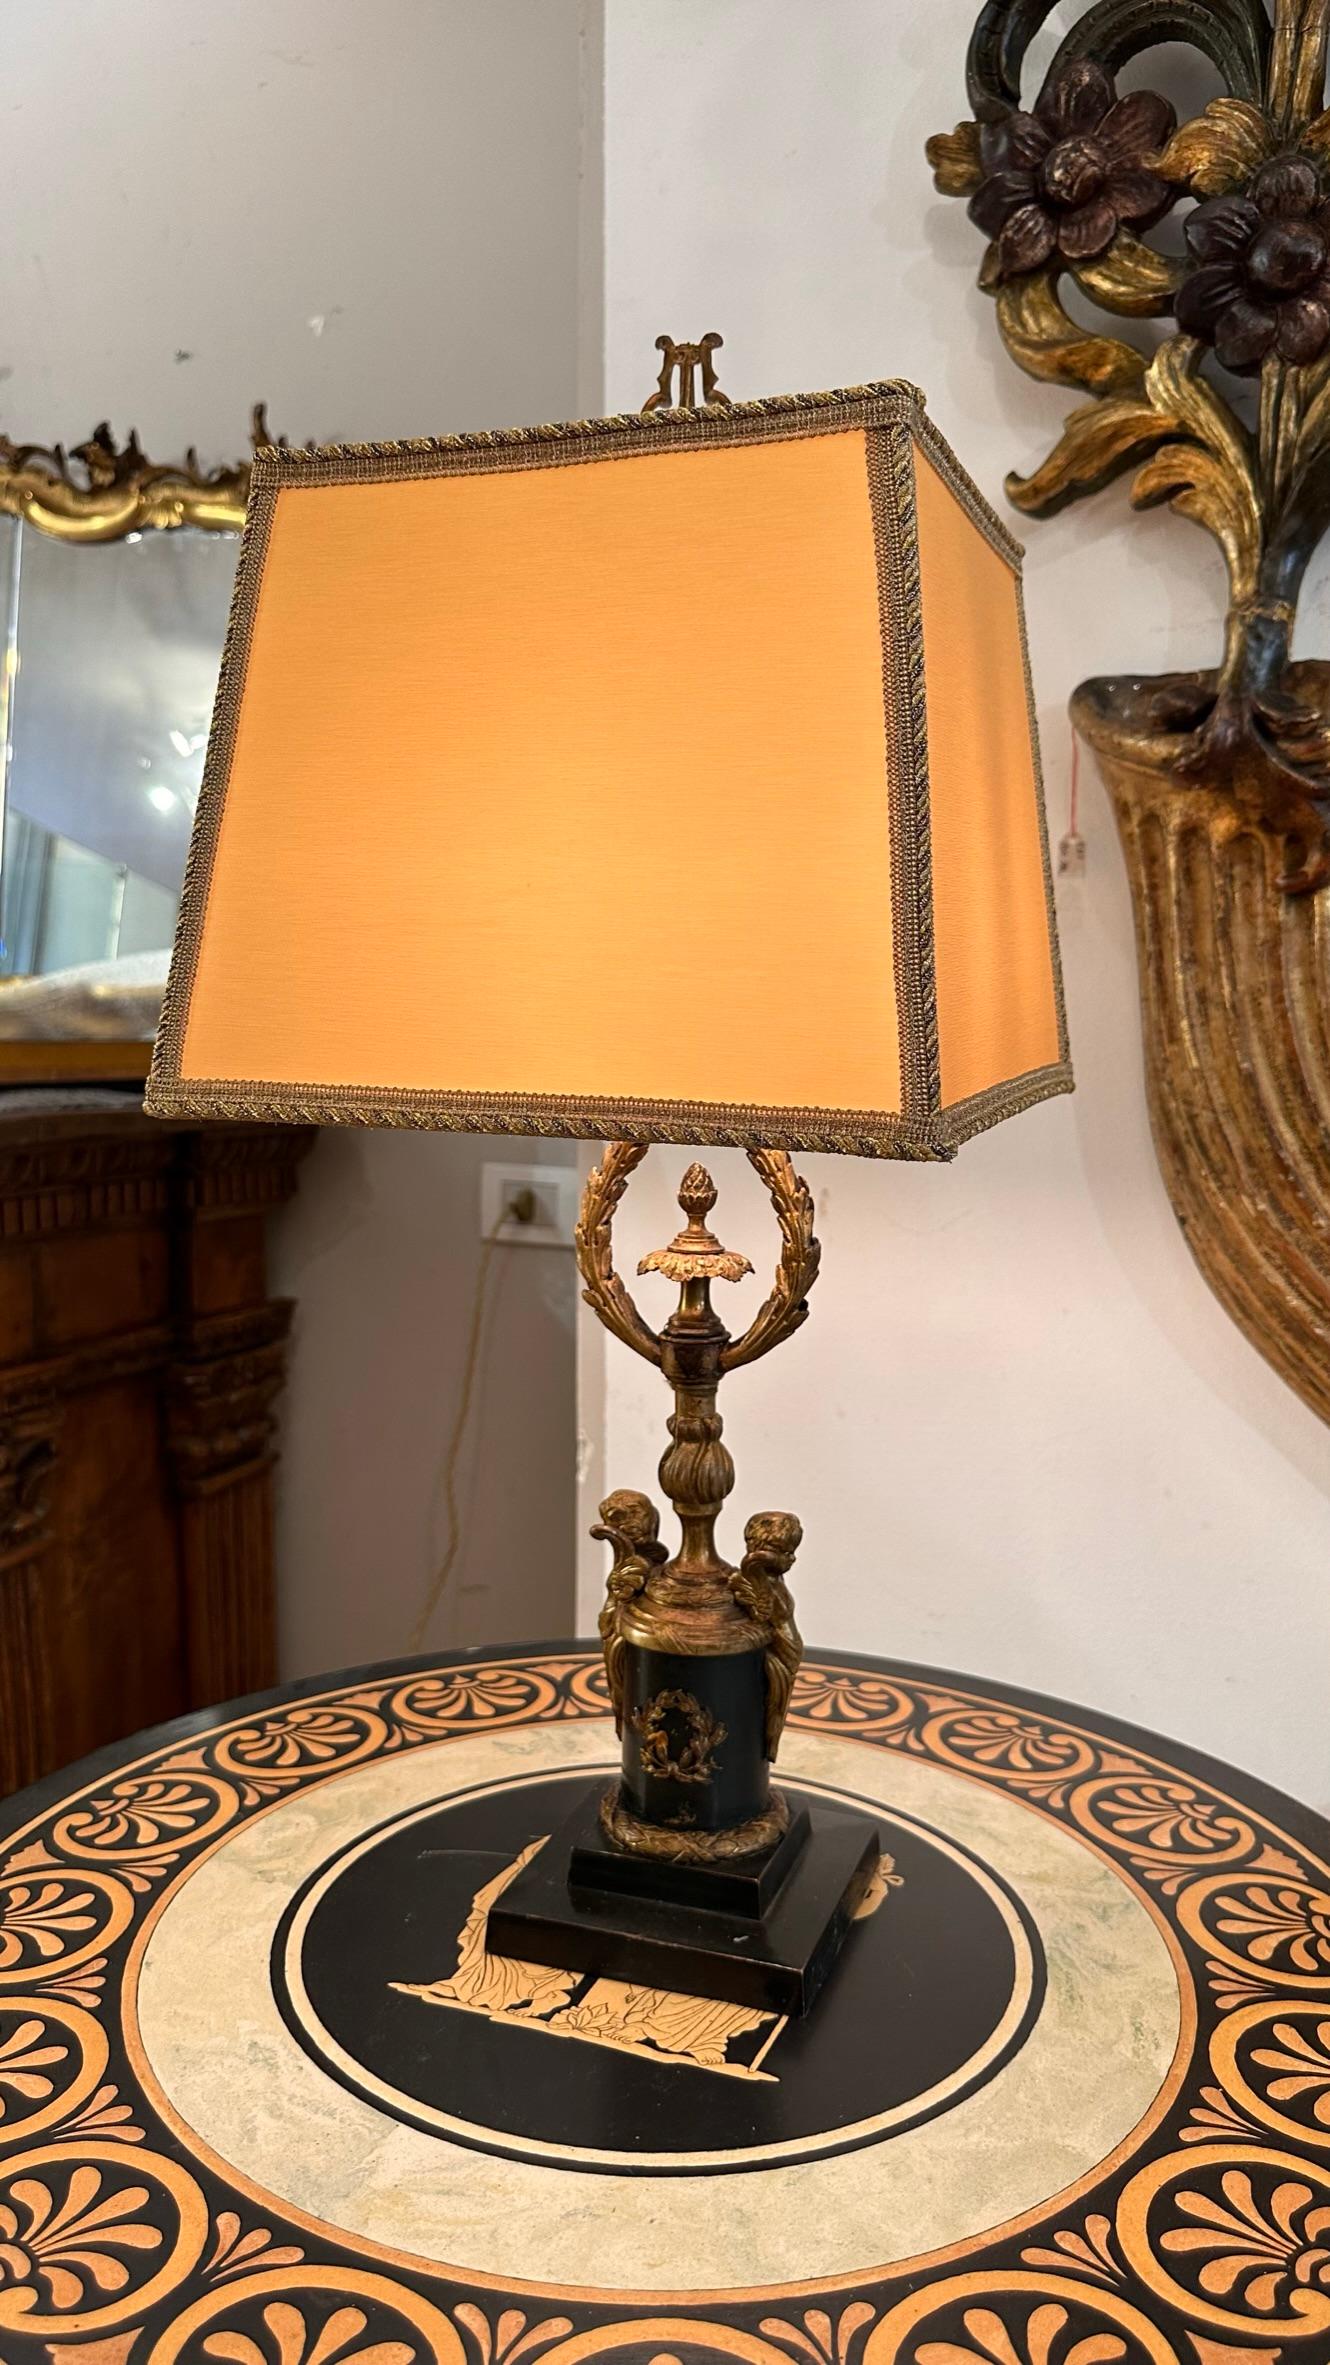 MID 19th CENTURY EMPIRE BOUILLOTTE LAMP For Sale 1